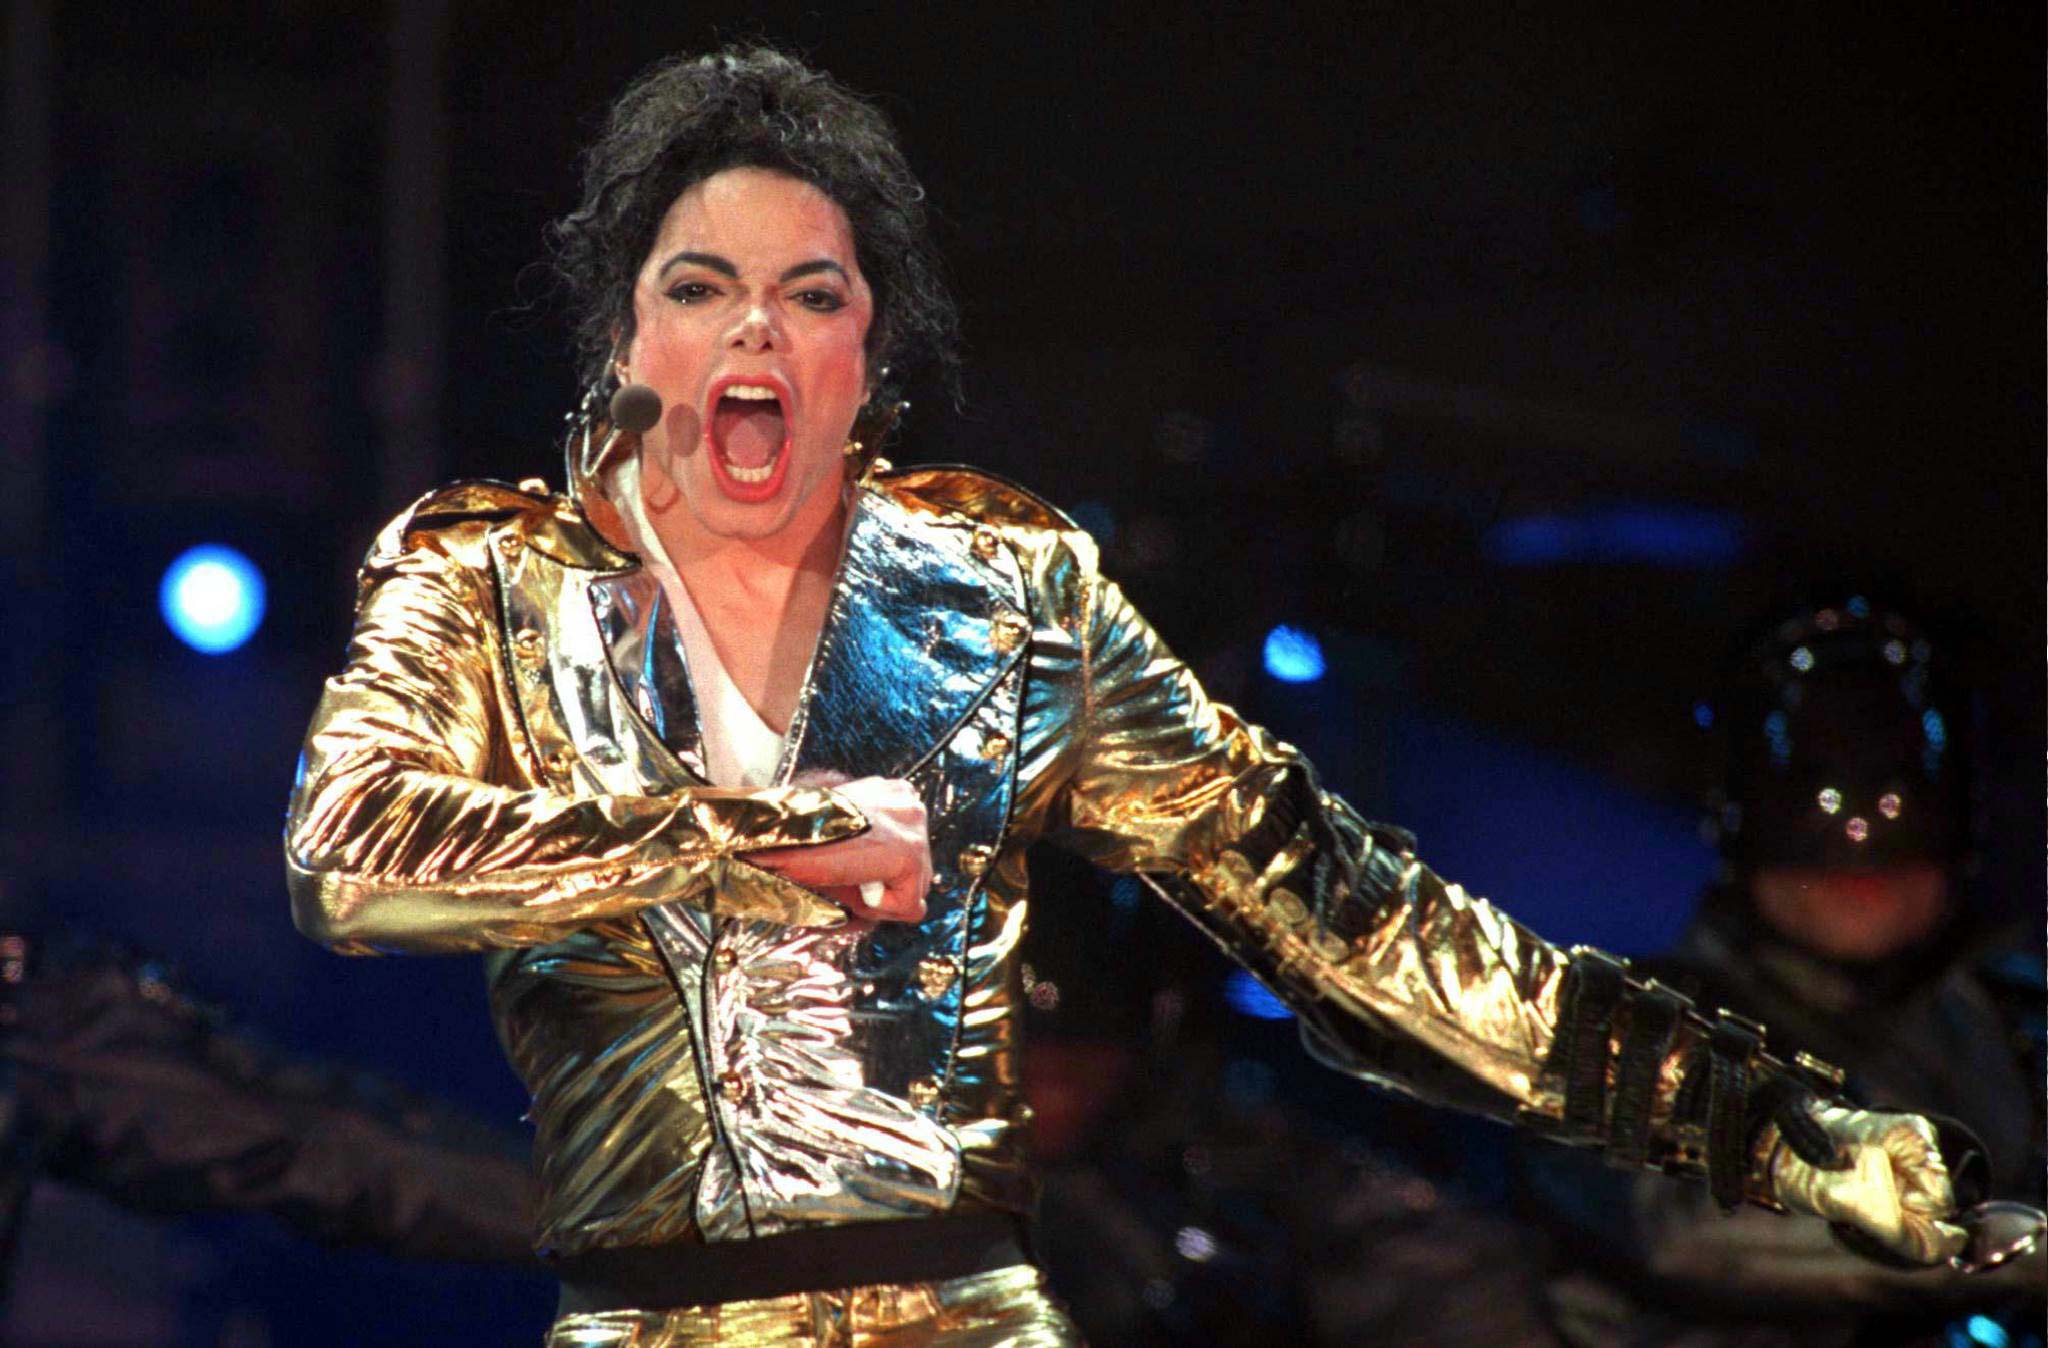 Documental sobre abusos sexuales pone bajo el microscopio el legado de Michael Jackson